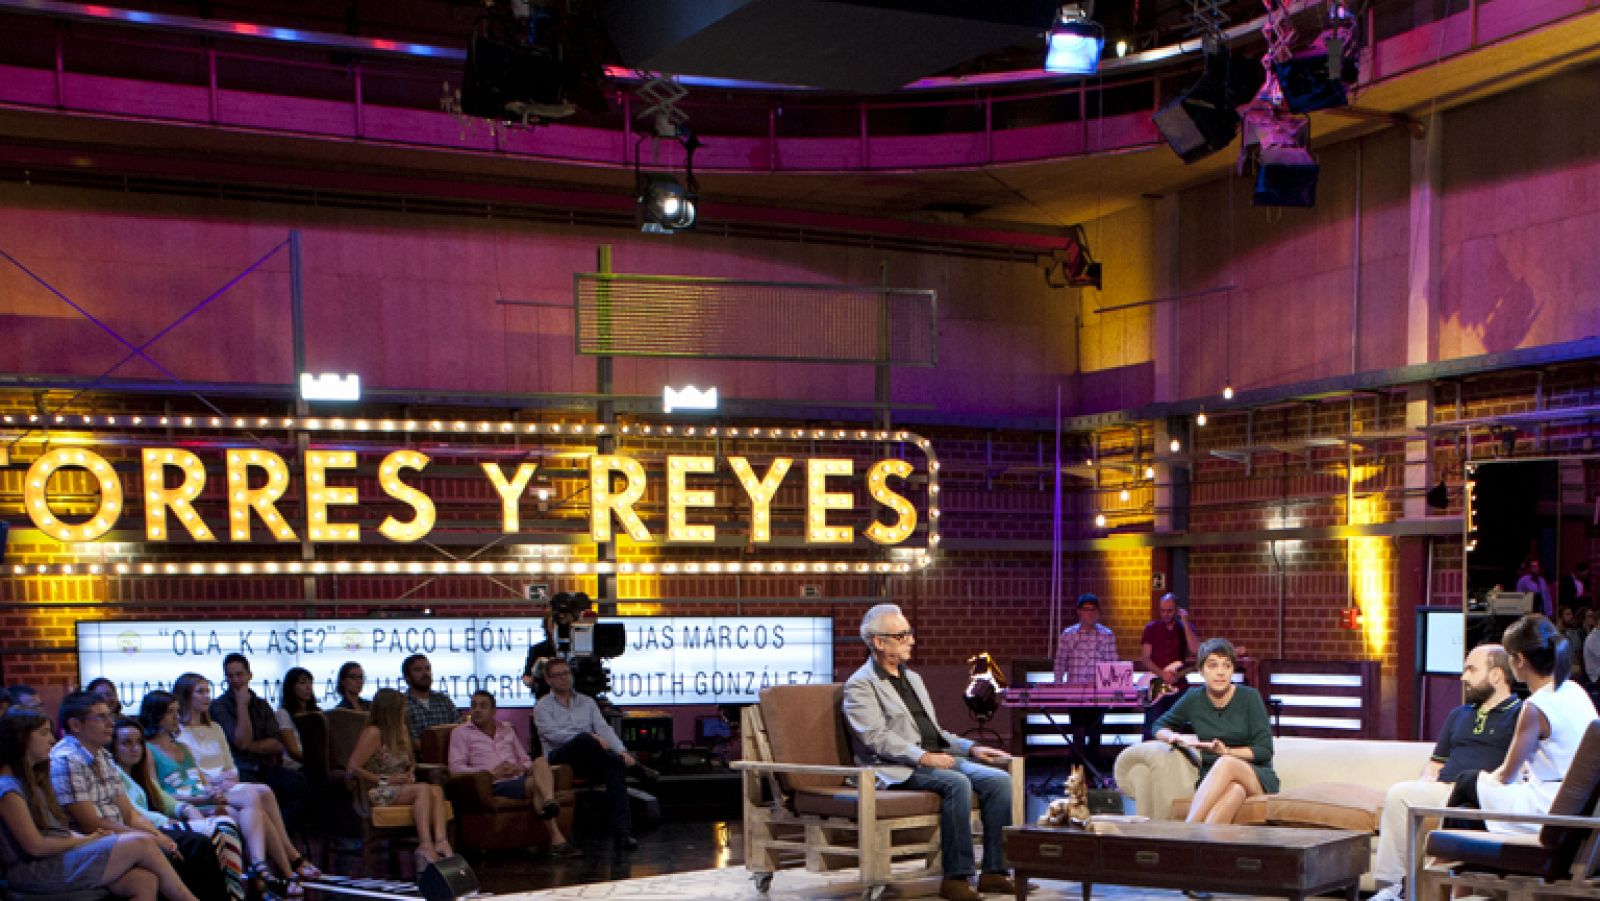 Torres y Reyes: El debate: "OLA K ASE" | RTVE Play